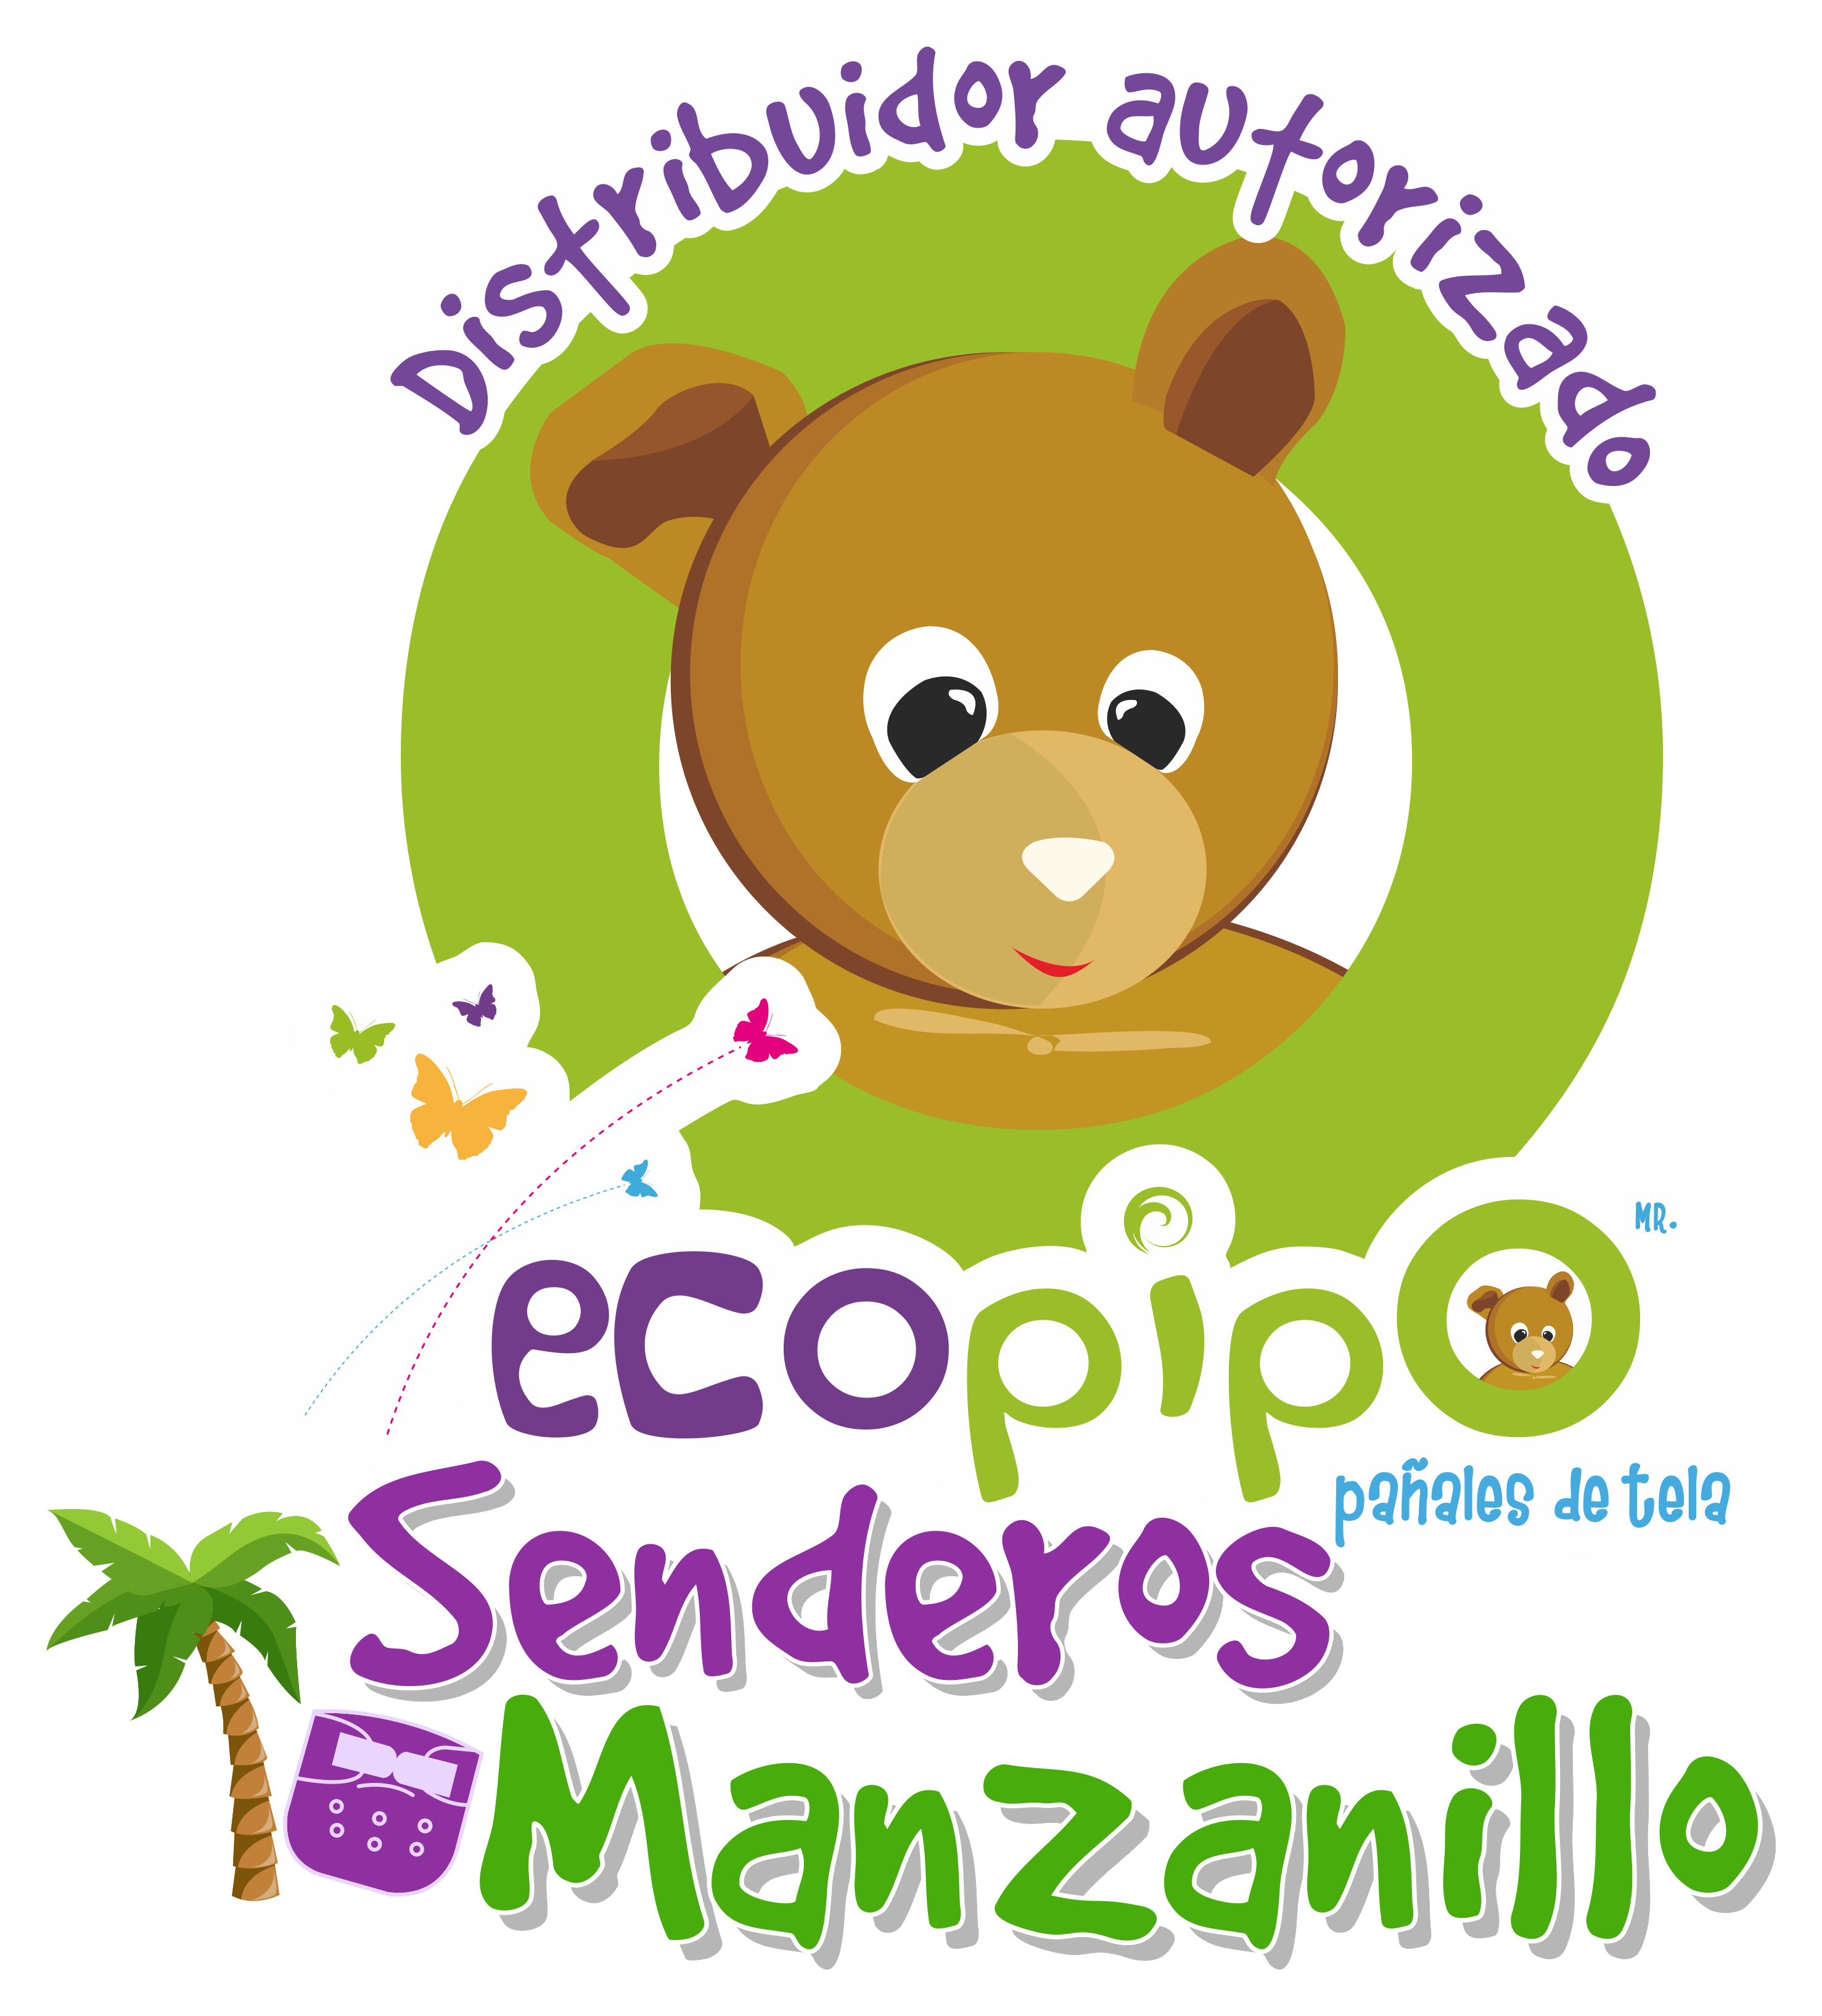 Ecopipo Senderos Manzanillo